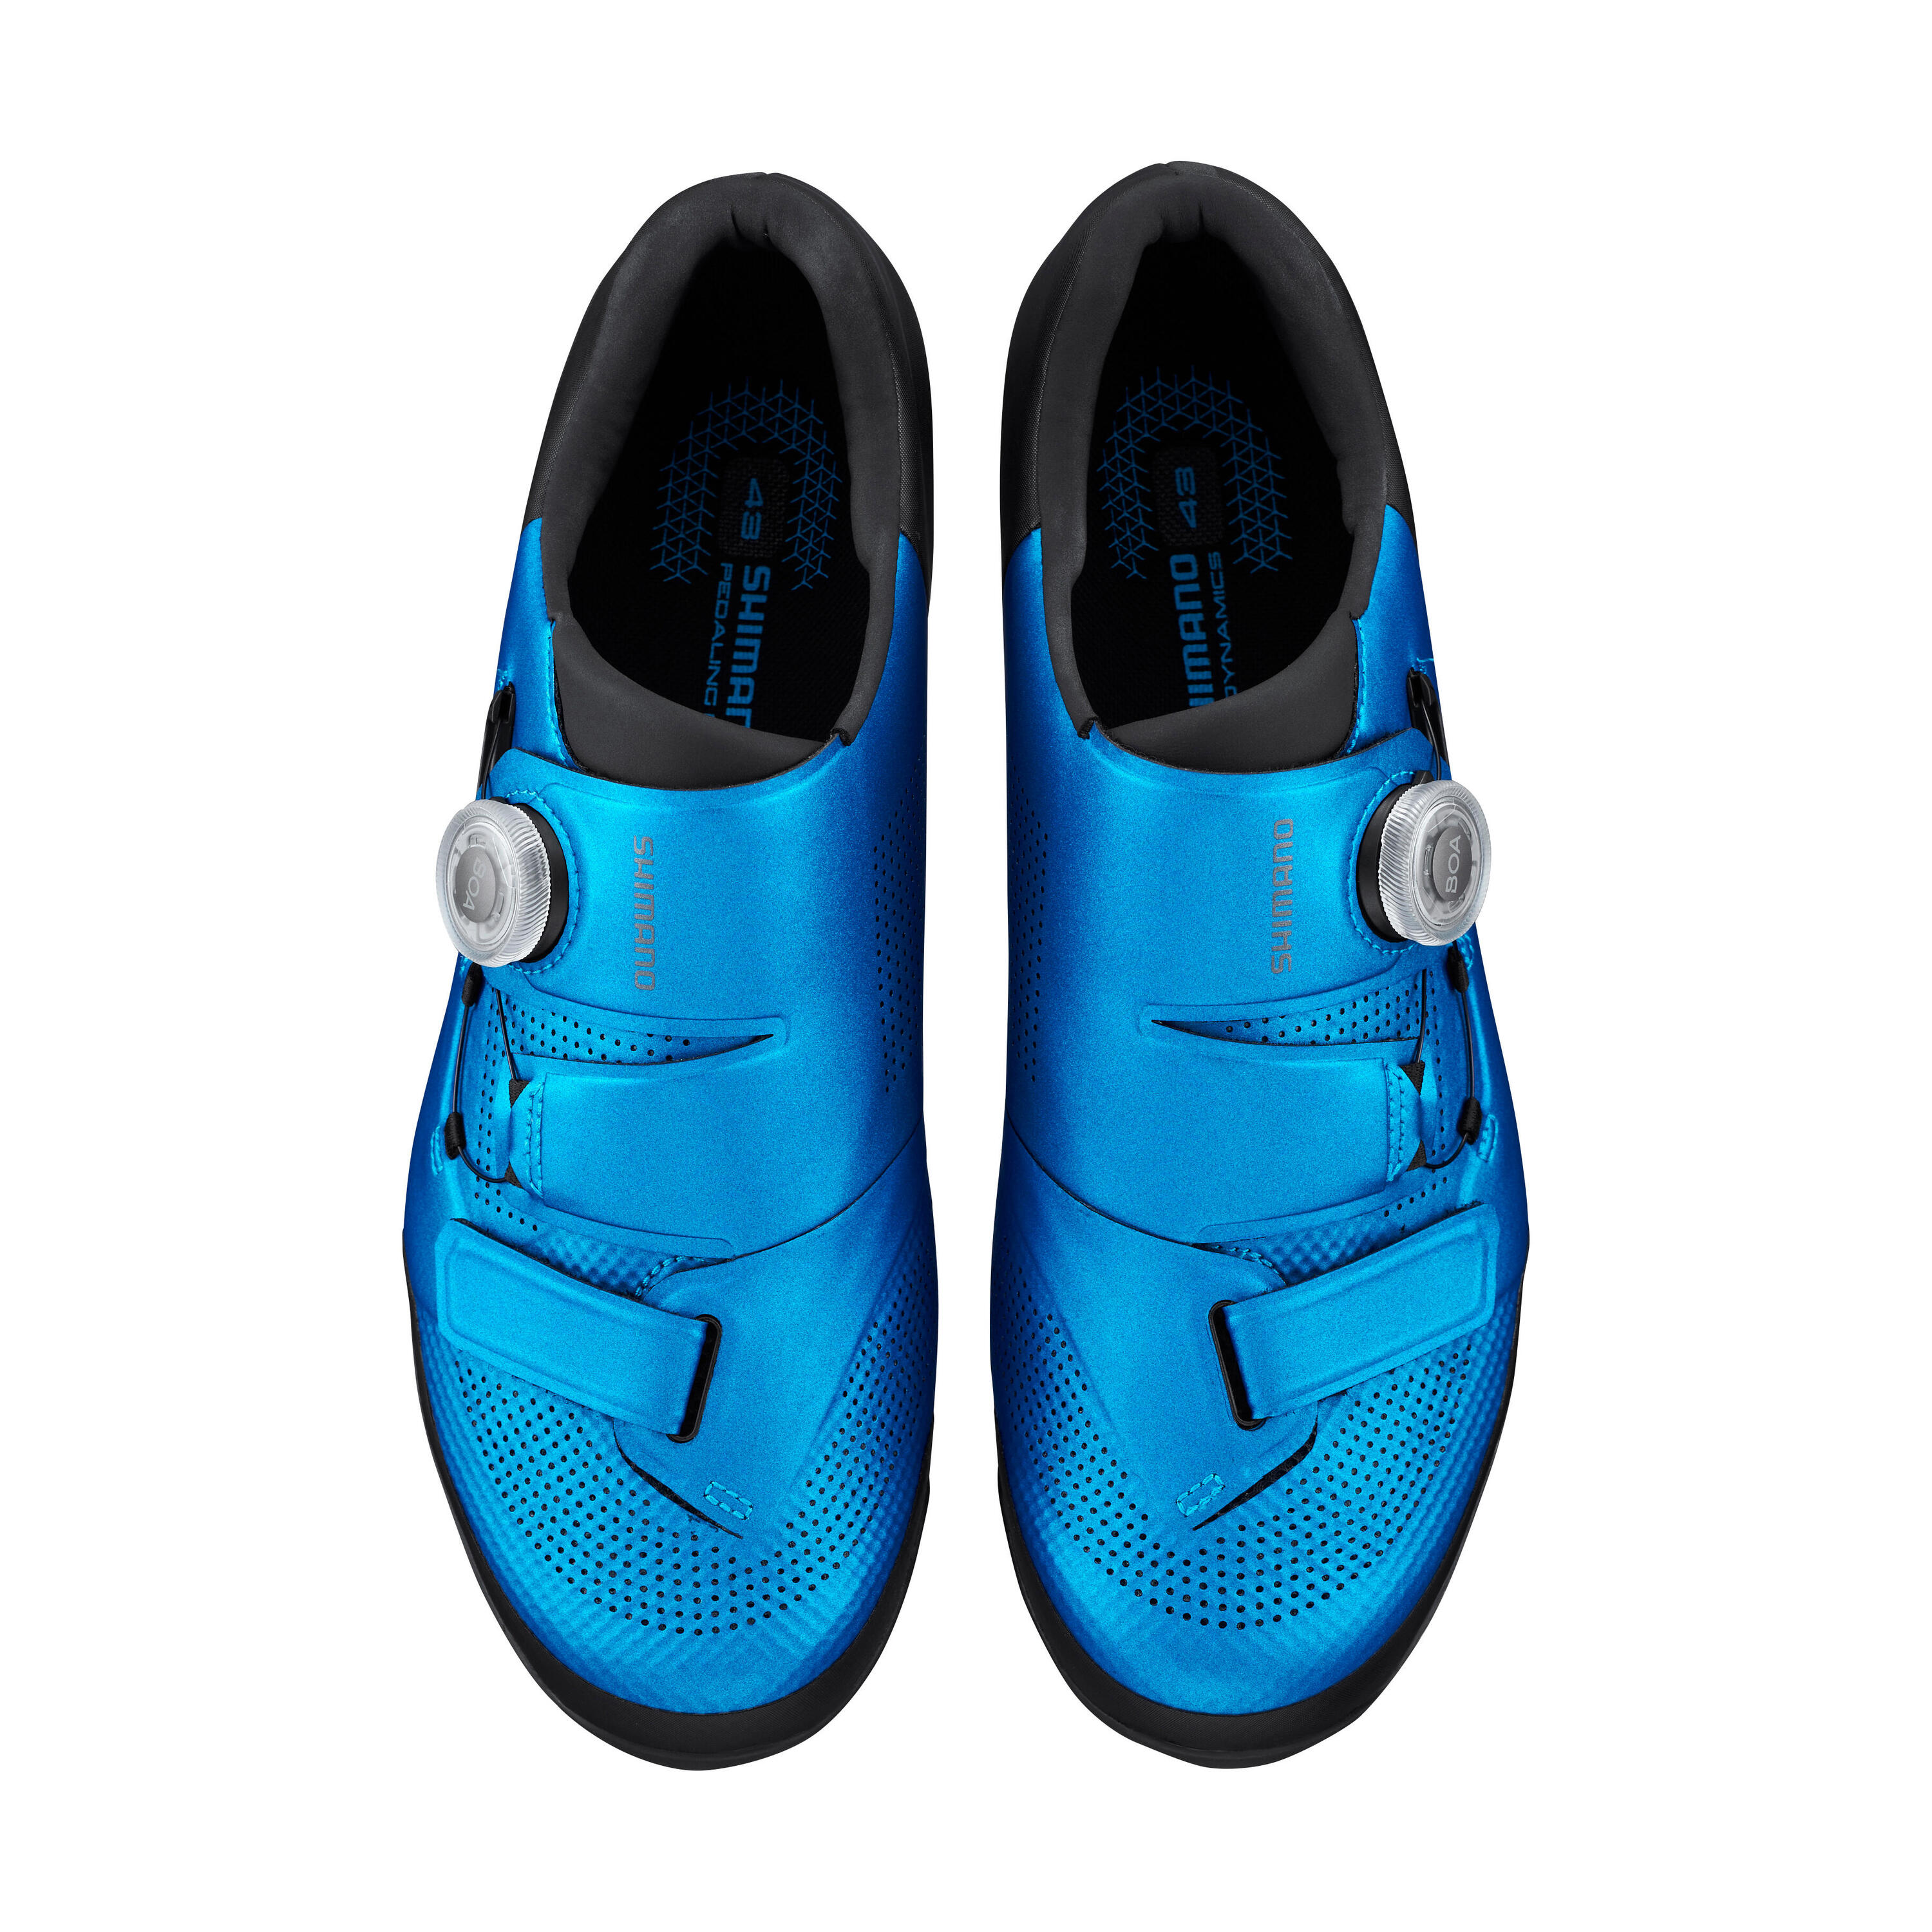 Mountain Bike Shoes SH-XC500 - Blue 1/4